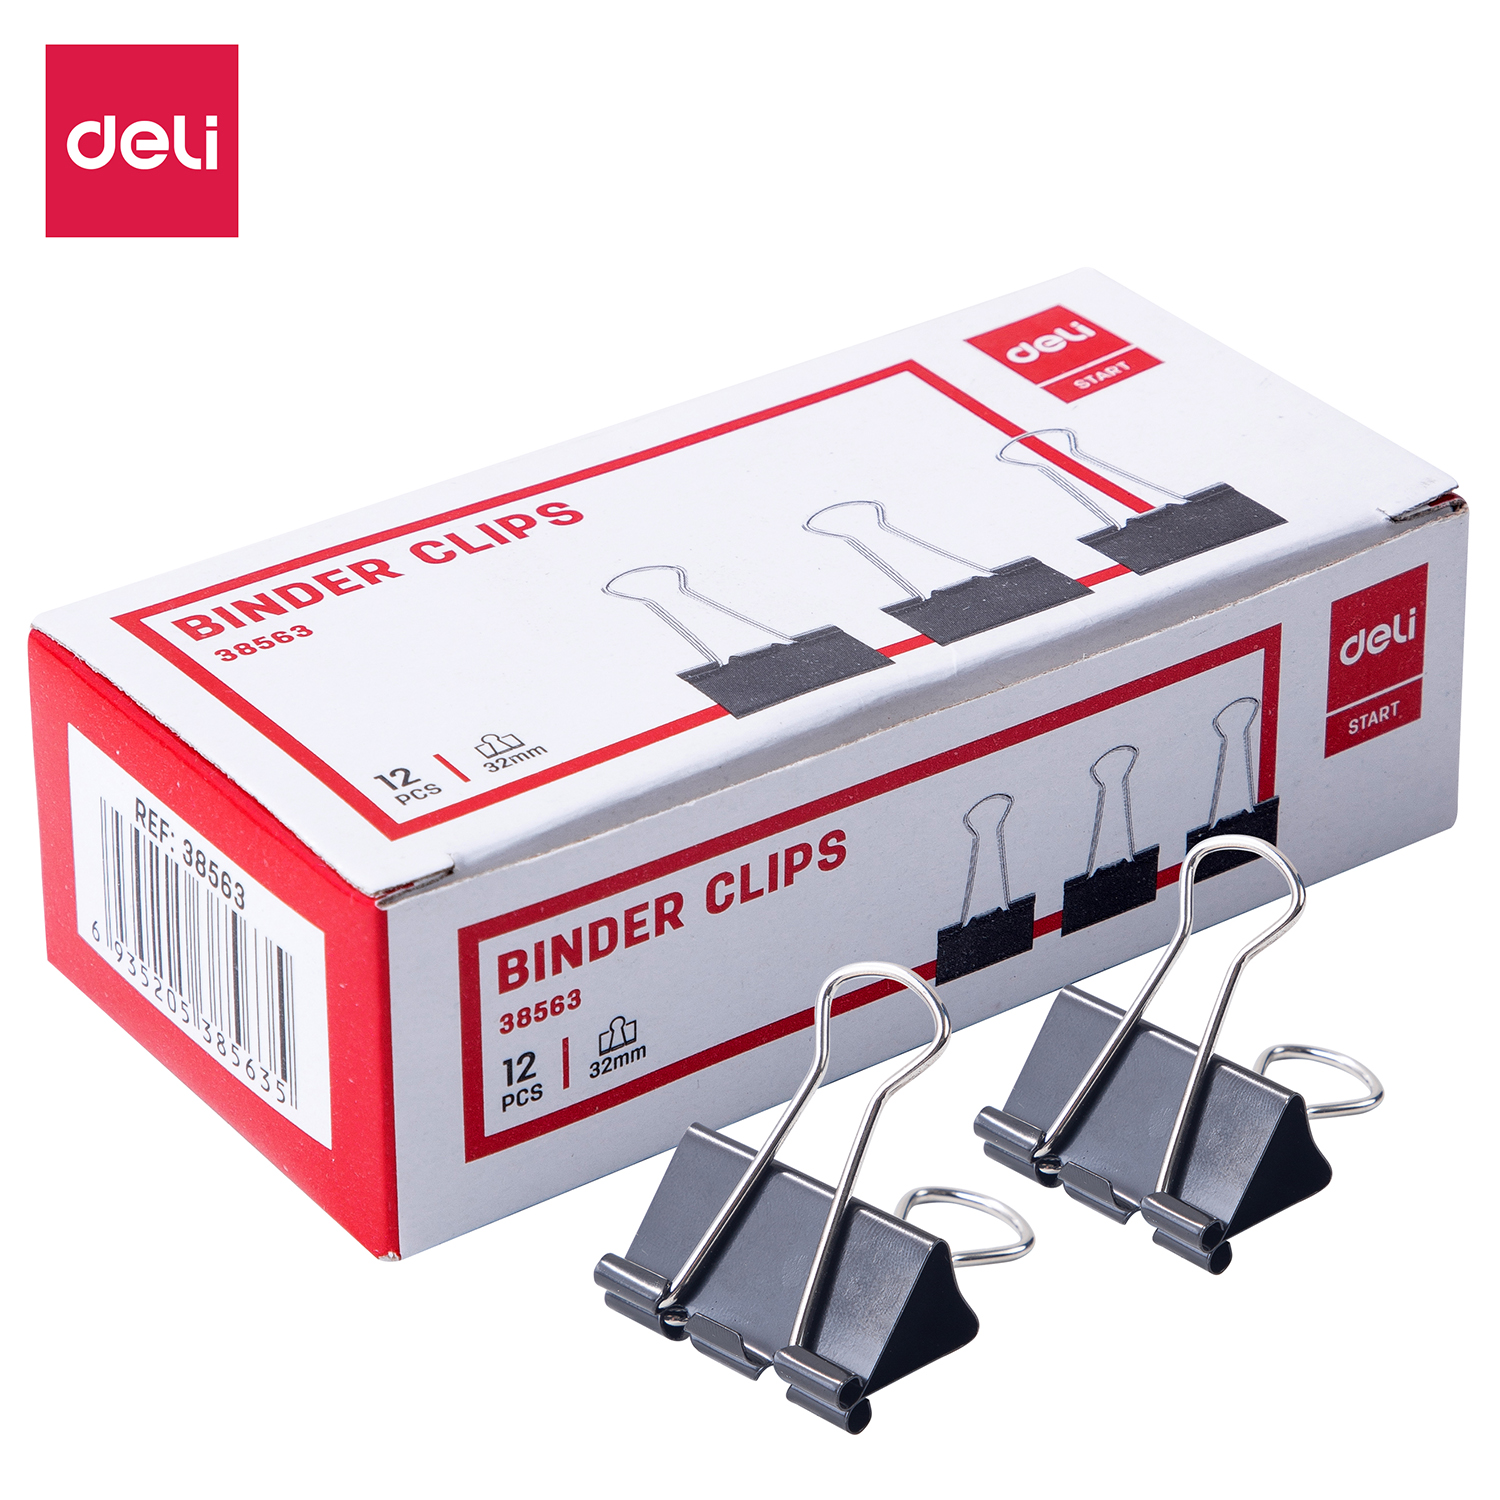 Deli-E38563 Effortless Binder Clip